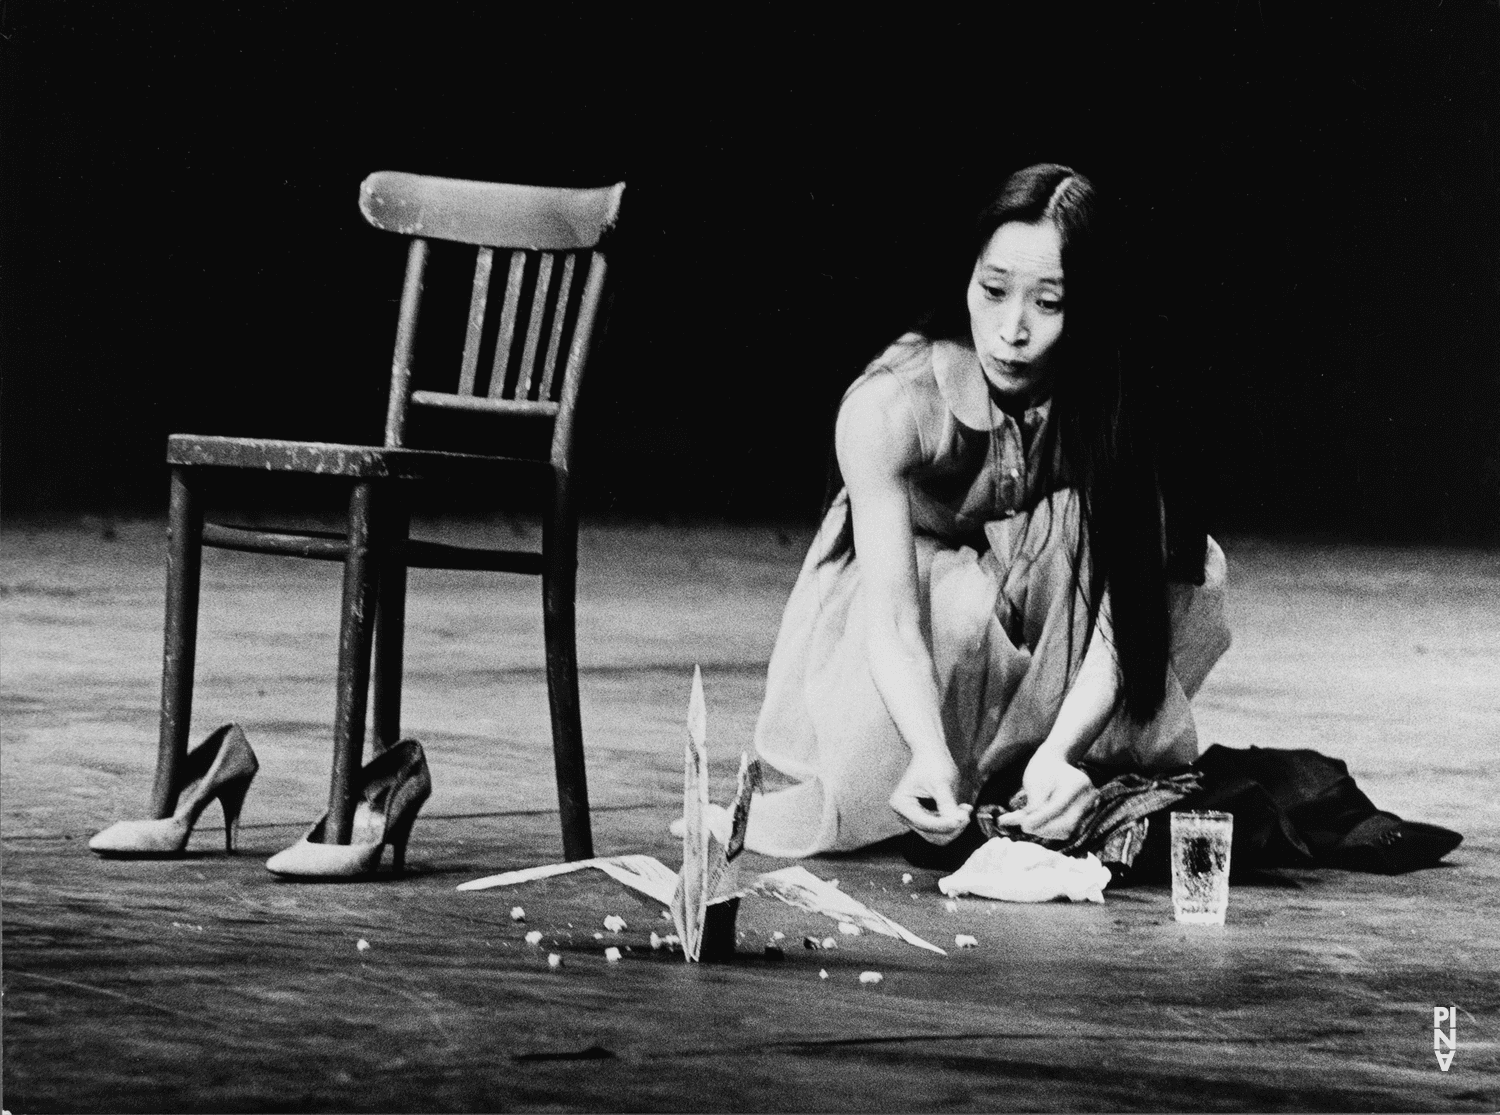 Kyomi Ichida in “Viktor” by Pina Bausch